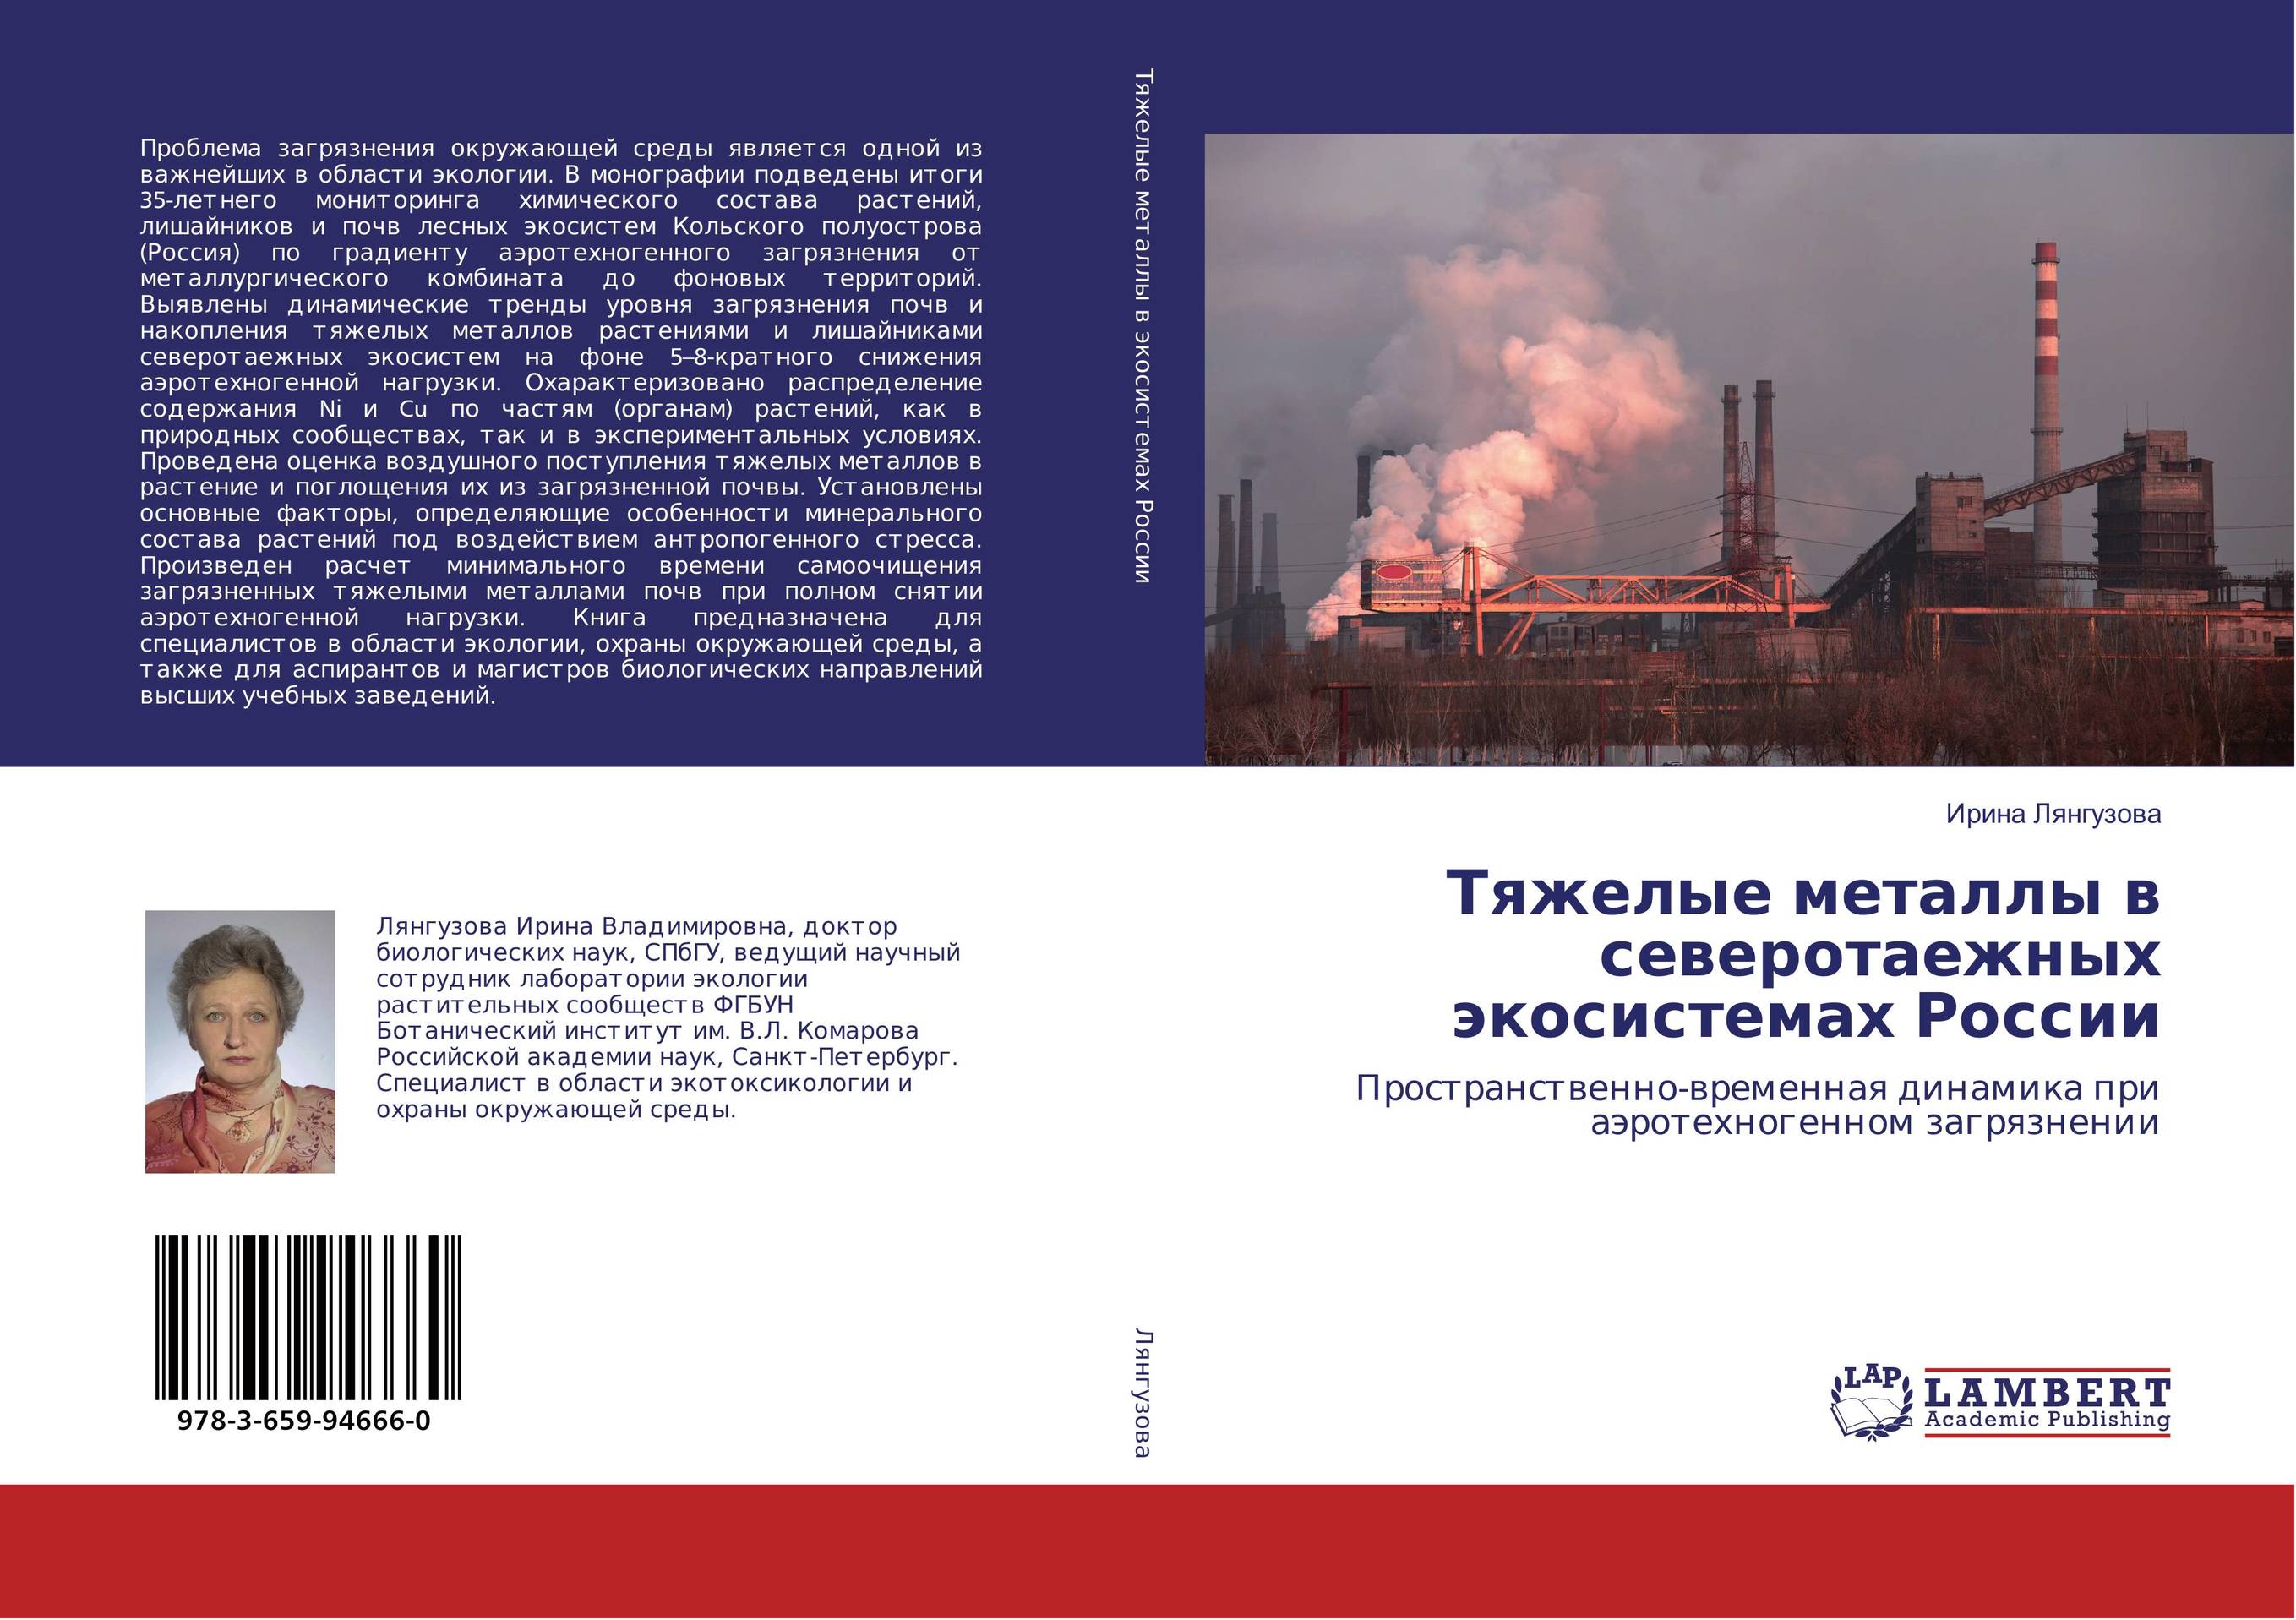 
        Тяжелые металлы в северотаежных экосистемах России. Пространственно-временная динамика при аэротехногенном загрязнении.
      